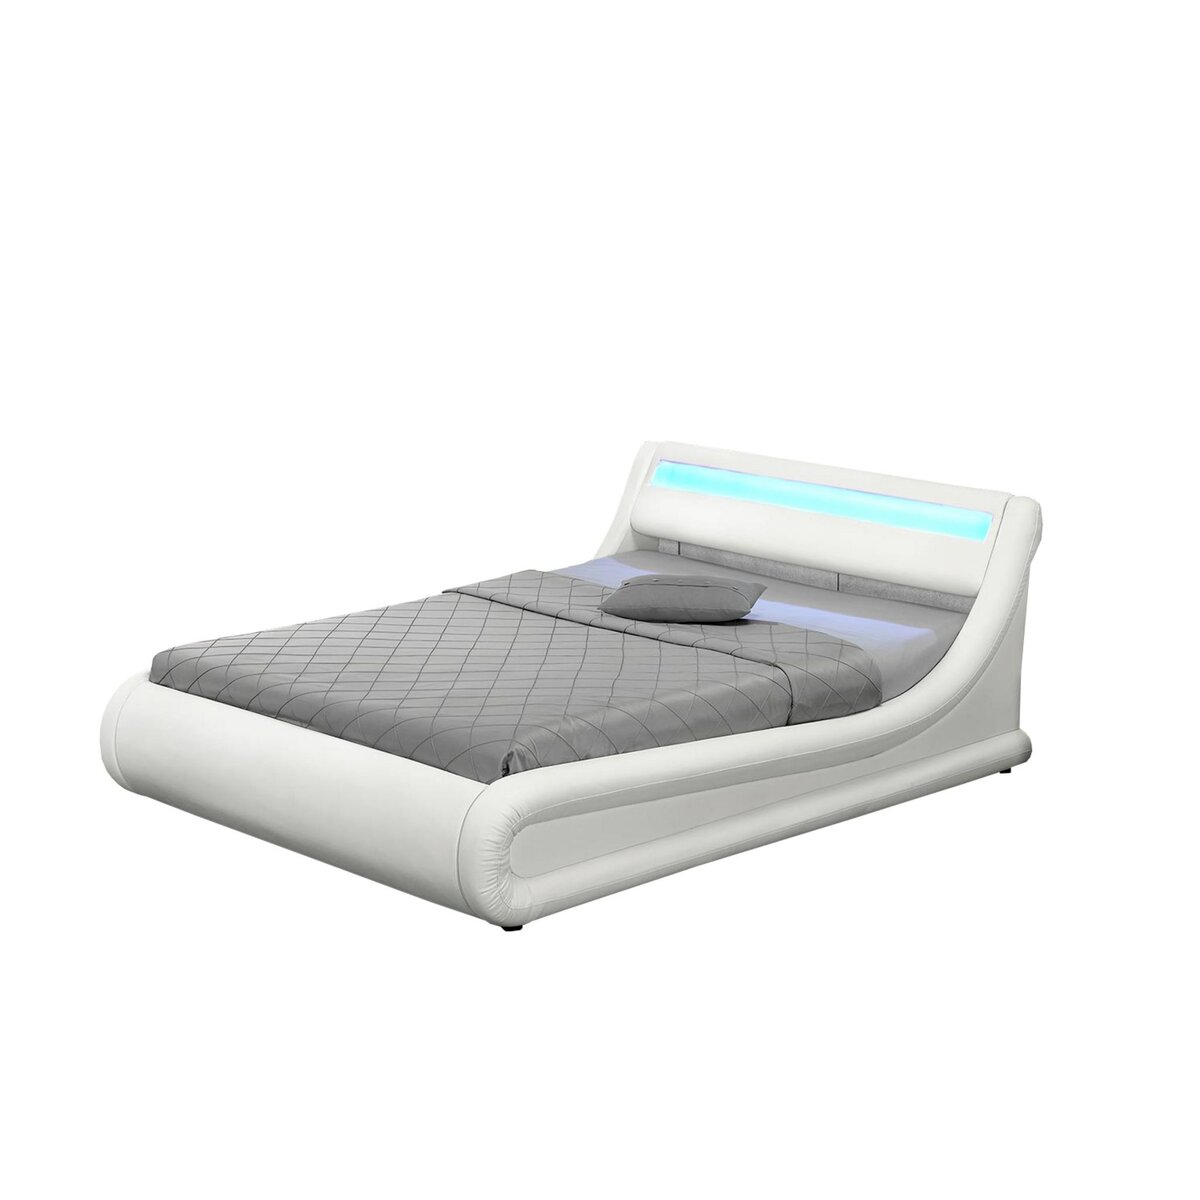 CONCEPT USINE Cadre de lit en PU blanc avec rangements et LED intégrées 160x200 cm PORTLAND